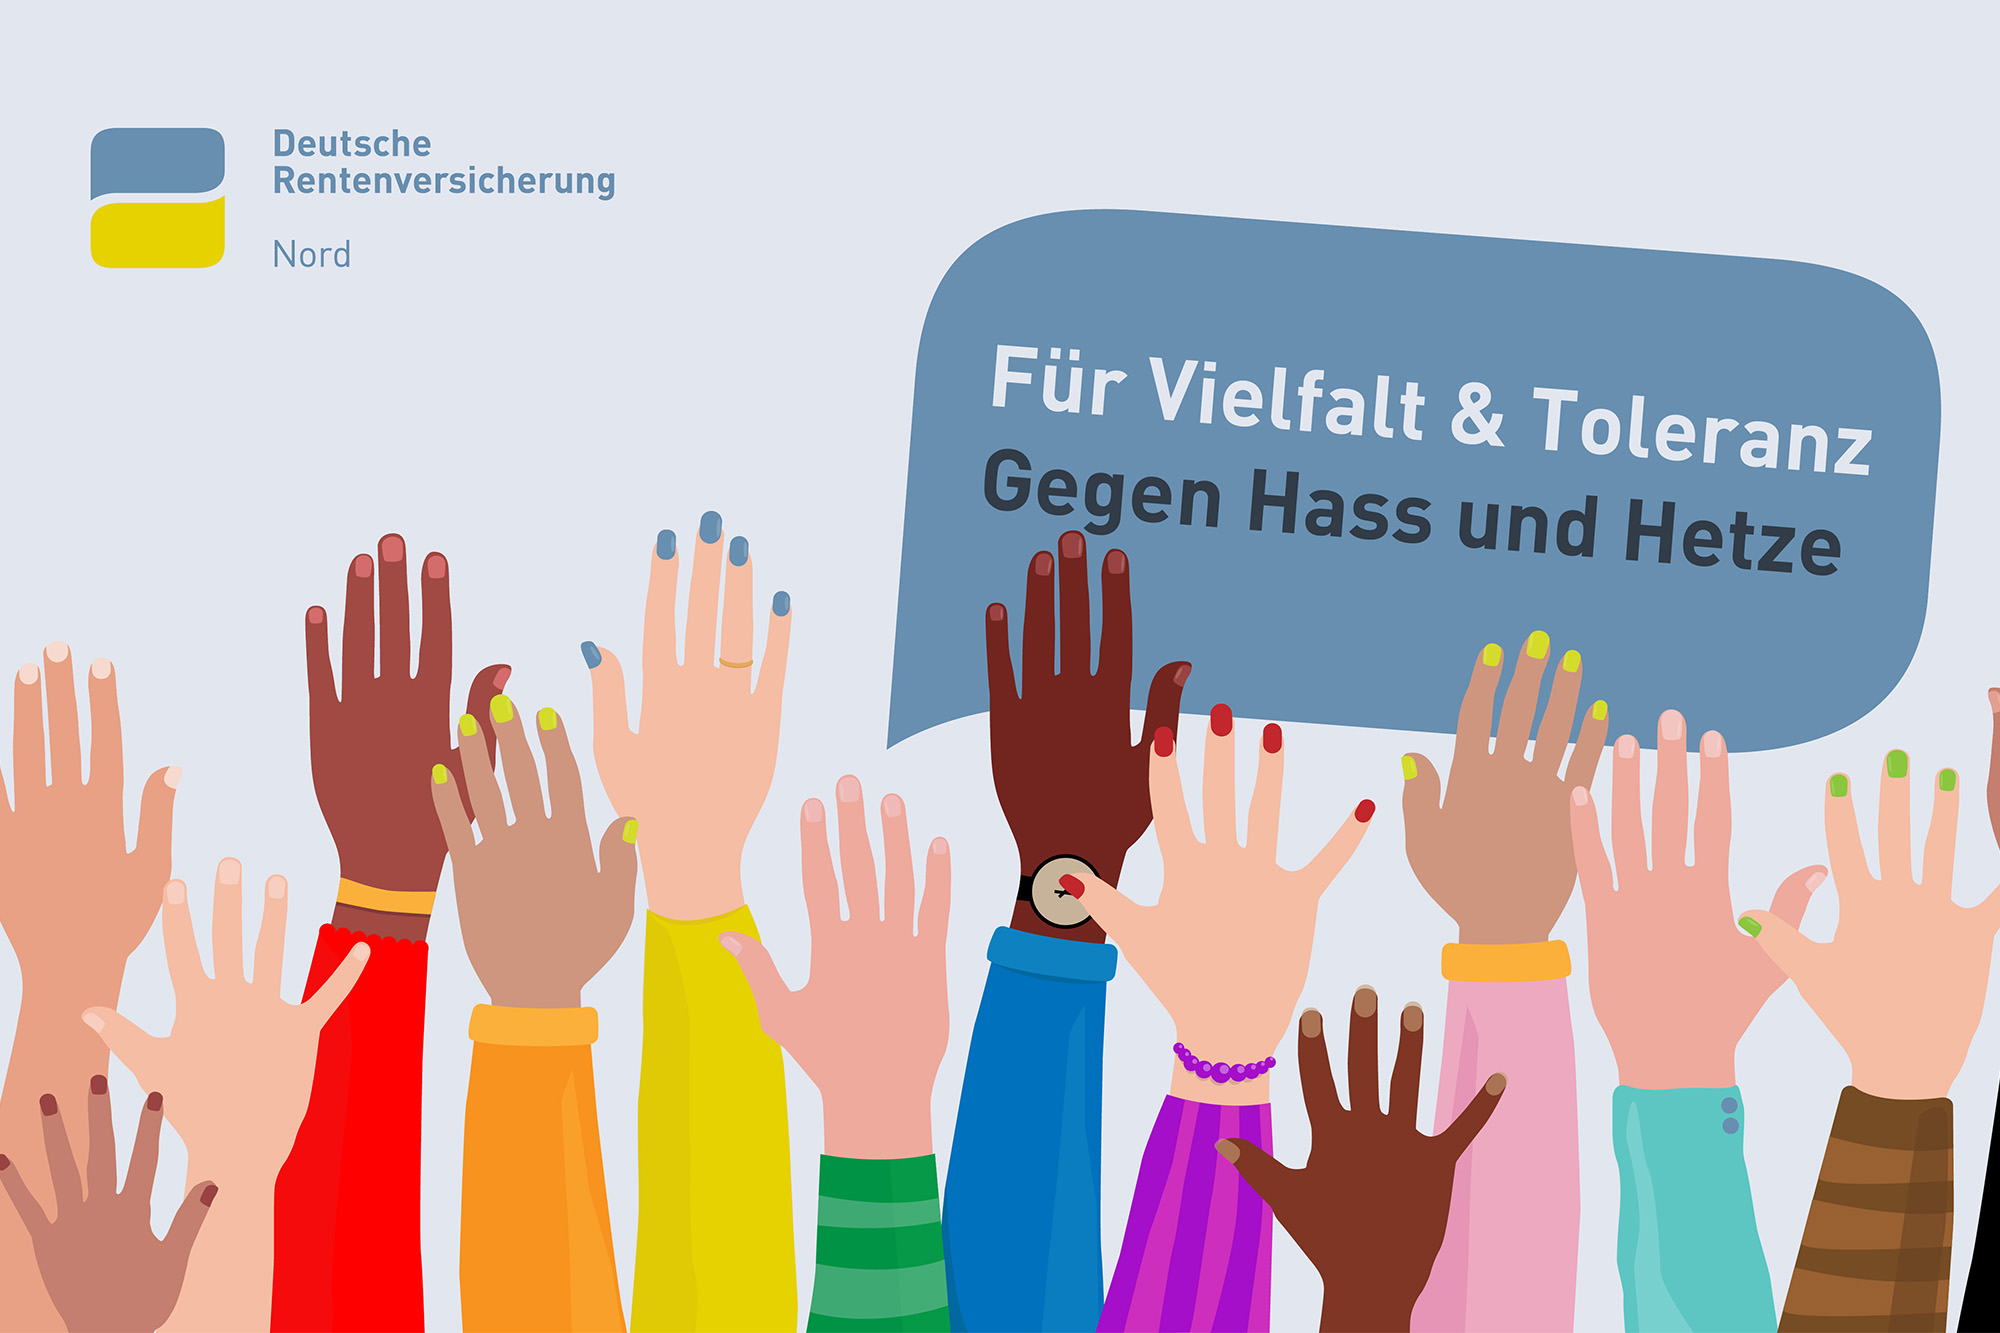 Das Bild zeigt verschiedenfarbige Hände und den Slogan "Für Vielfalt & Toleranz - Gegen Hass und Hetze"